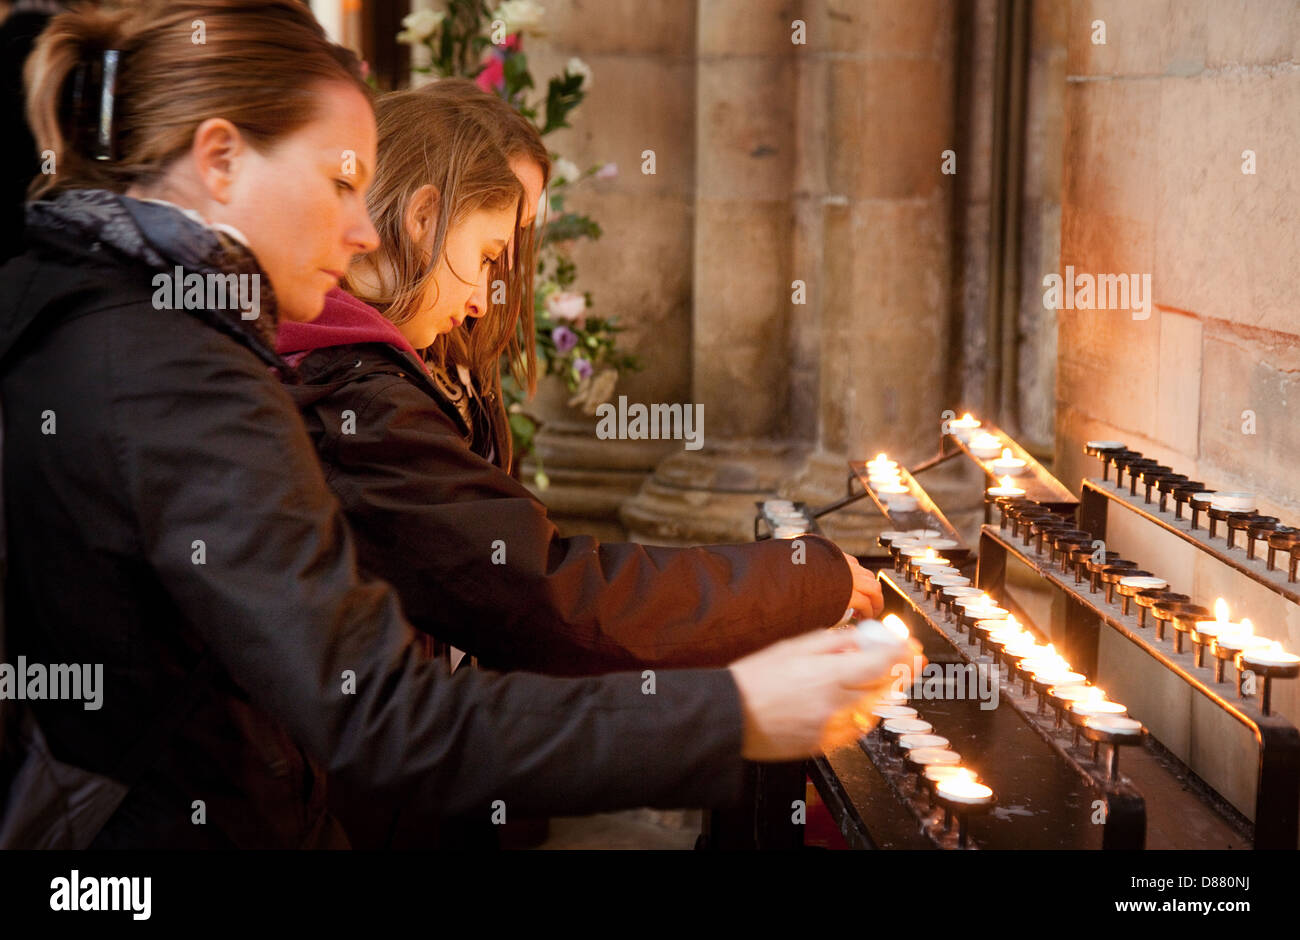 Adolescentes adolescents adolescents bougies d'éclairage d'une bougie à l'intérieur de la cathédrale York Minster, Yorkshire UK Banque D'Images